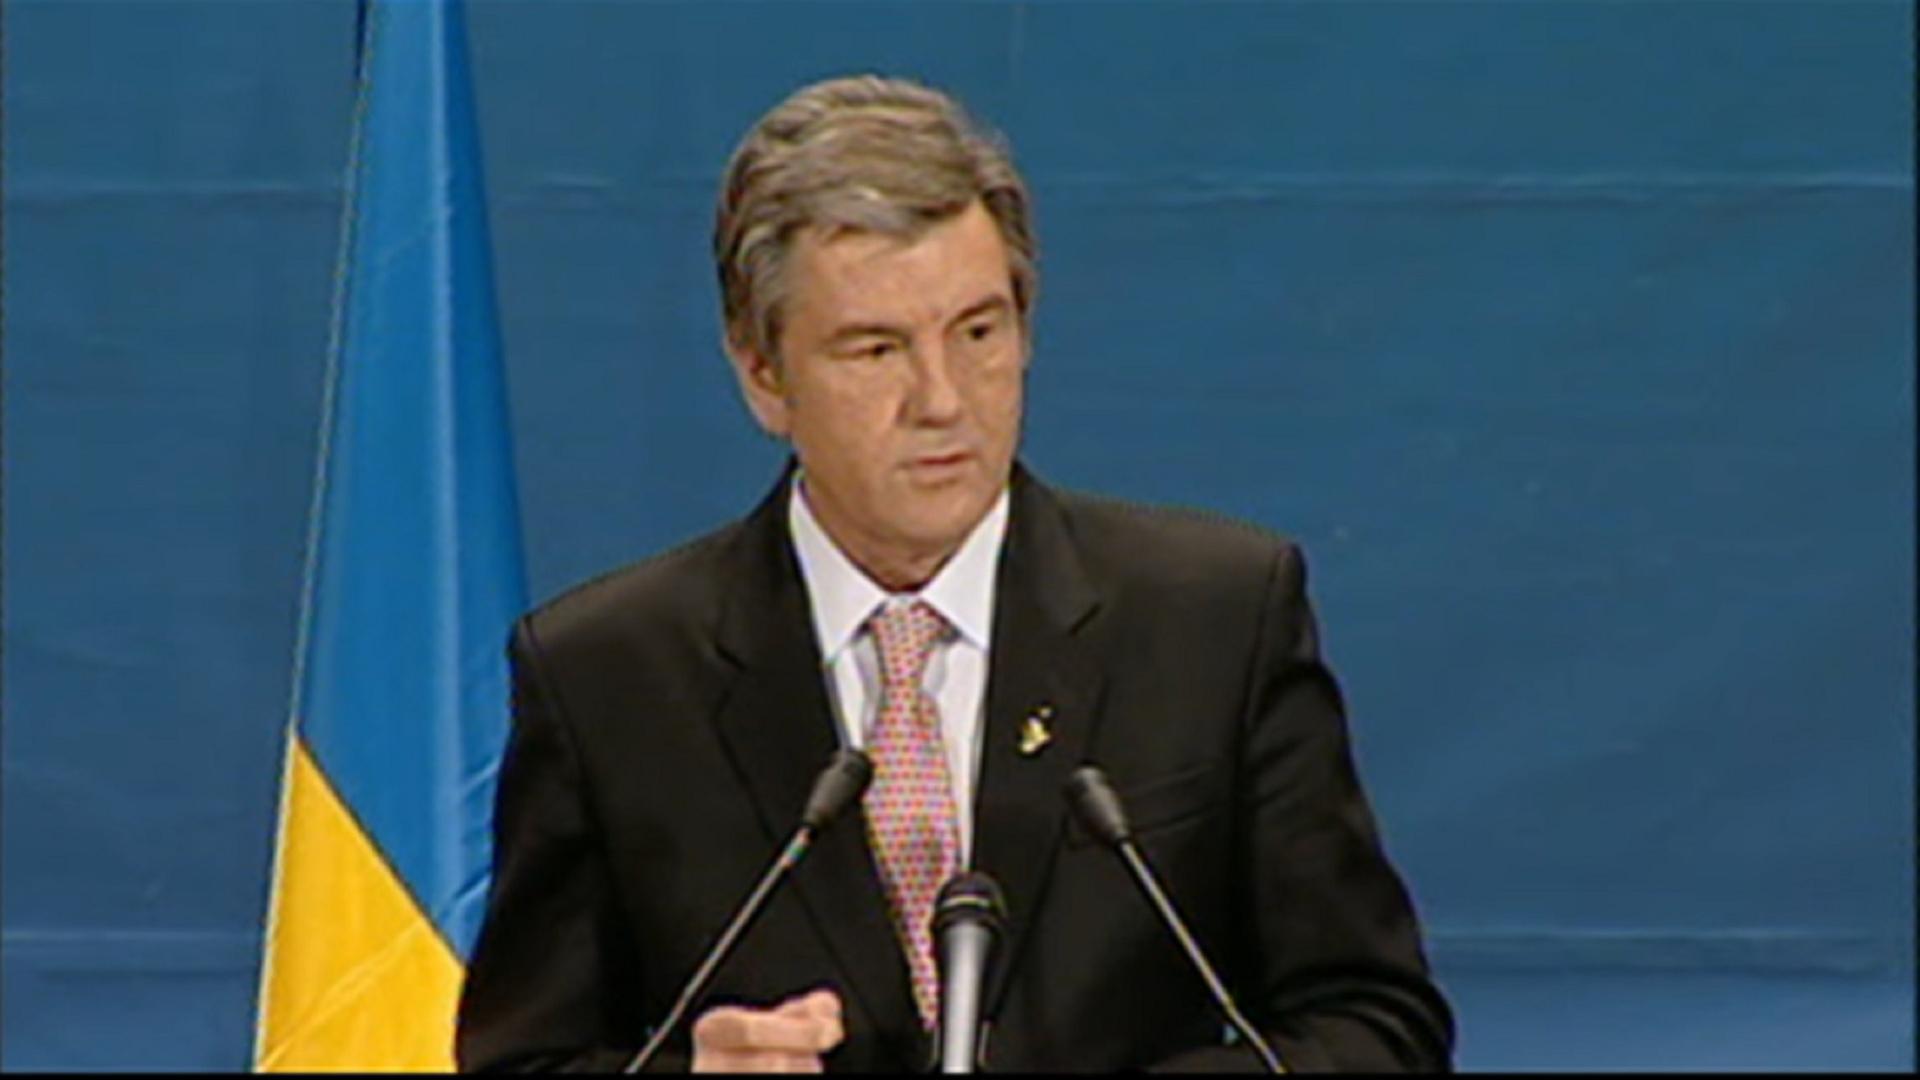 04.04.2008 - Ukraine bei NATO-Gipfel